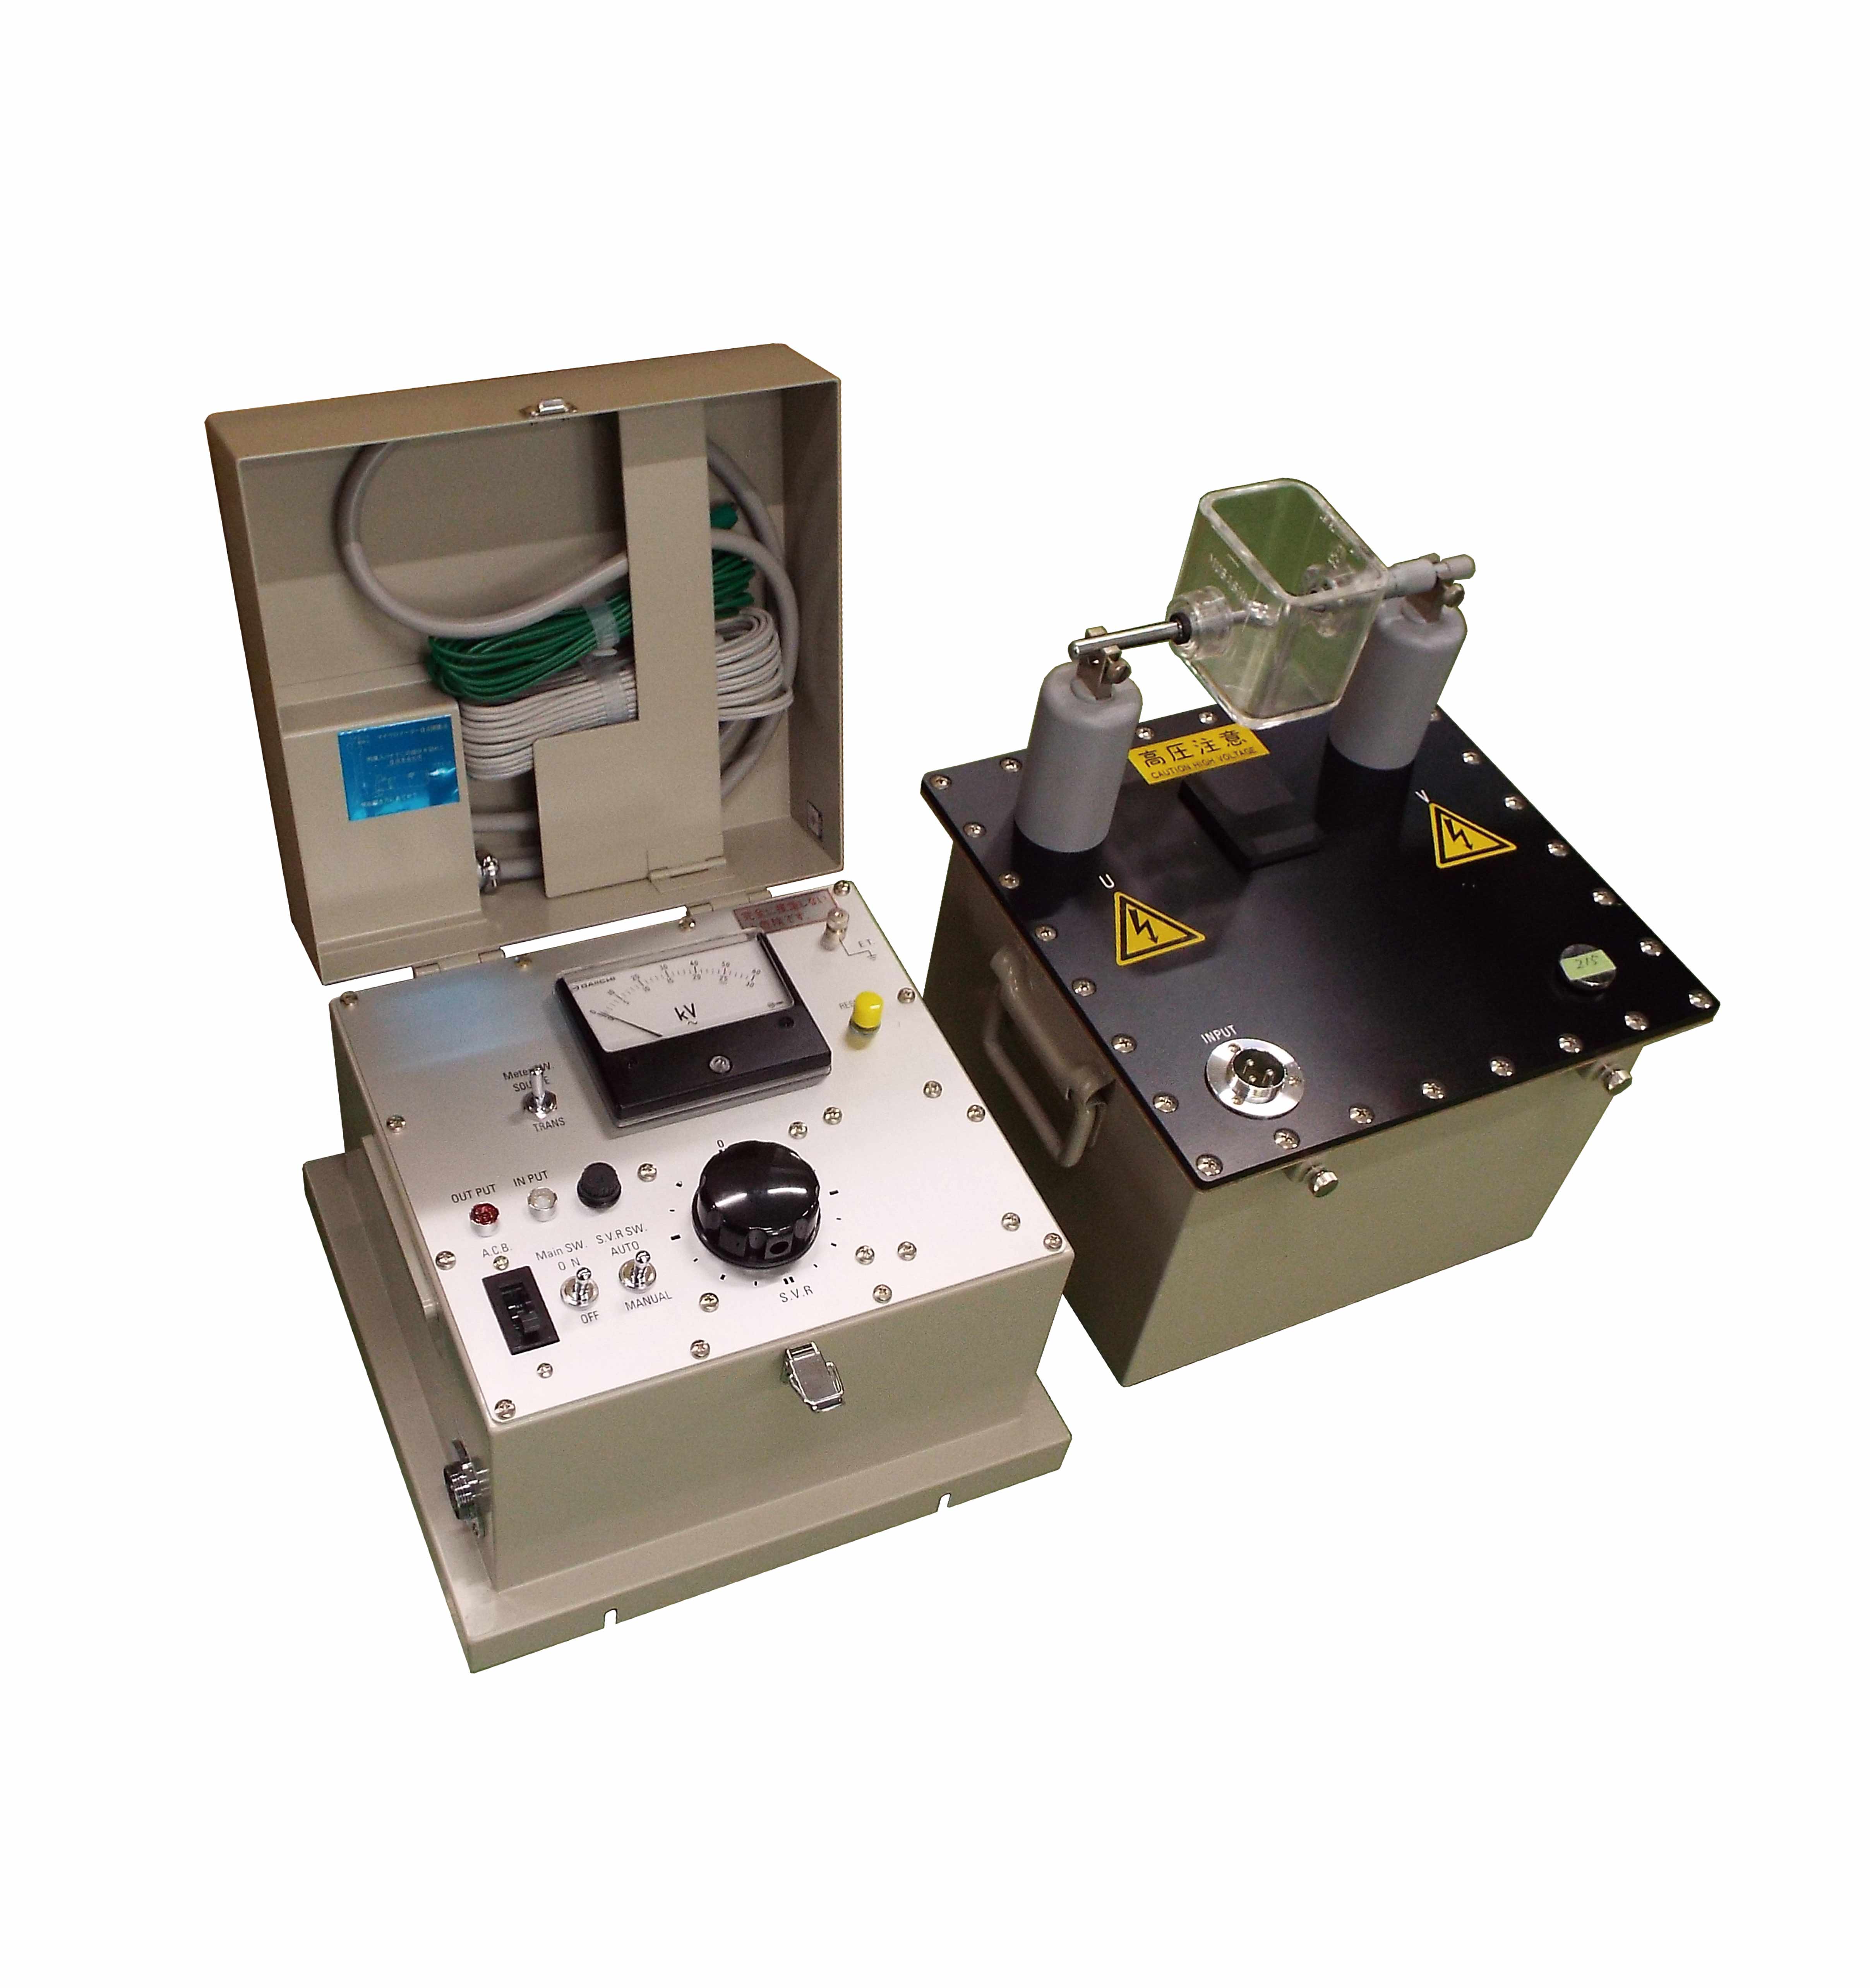 耐電圧試験器 IPKシリーズ，絶縁油試験器 IP-55R